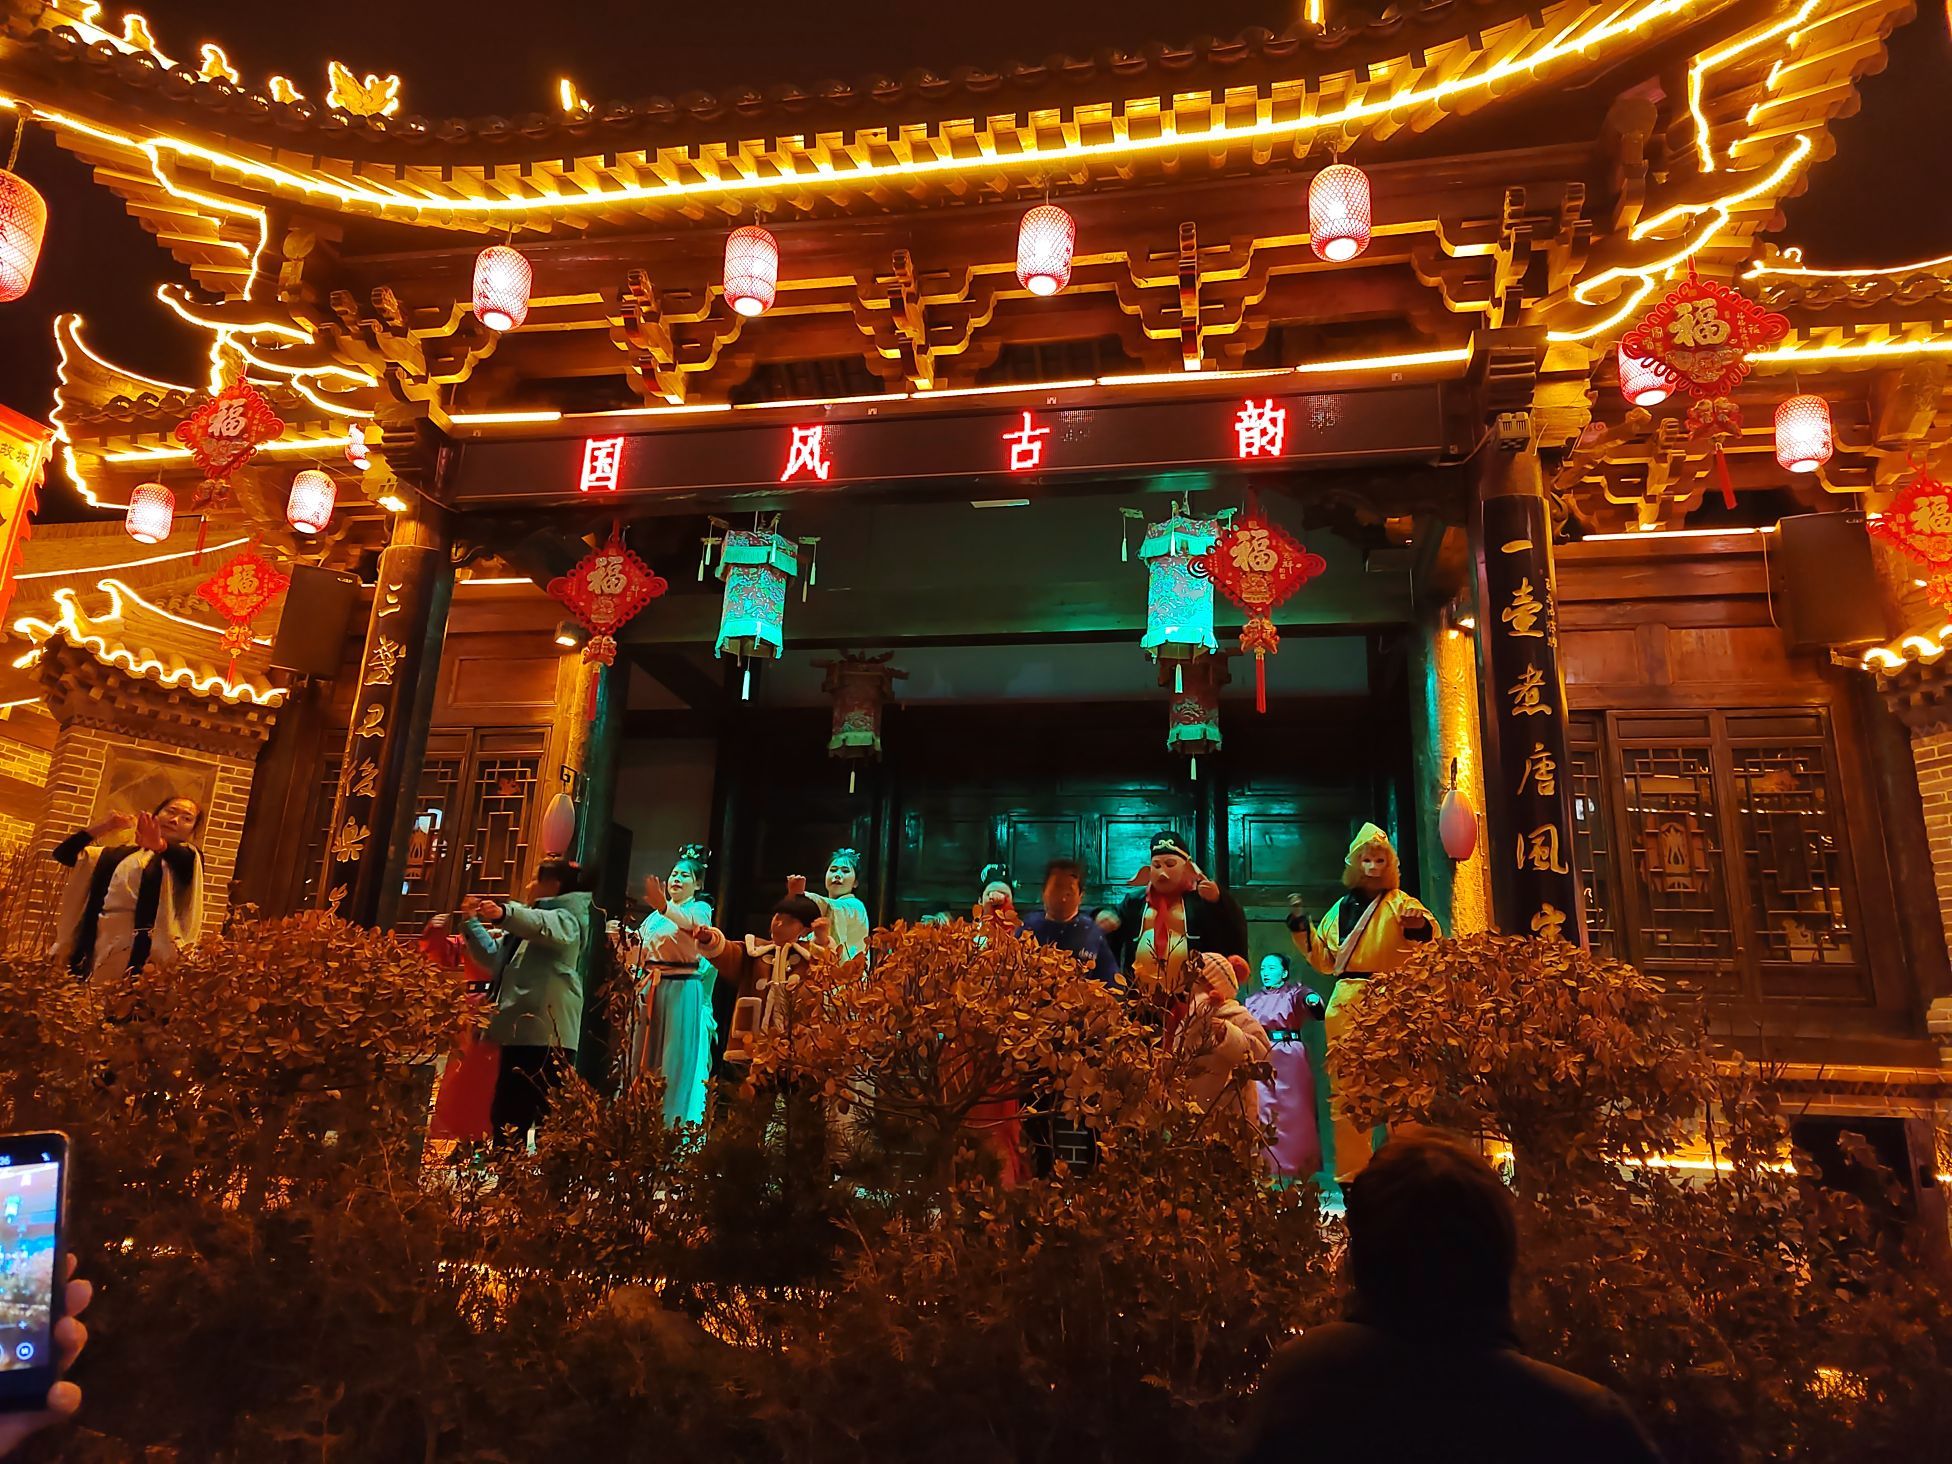 环县故城非常有意思，有皮影戏表演，还有皮影制作显示，大舞台也有表演。这家酒店步行到故城十分钟左右，也